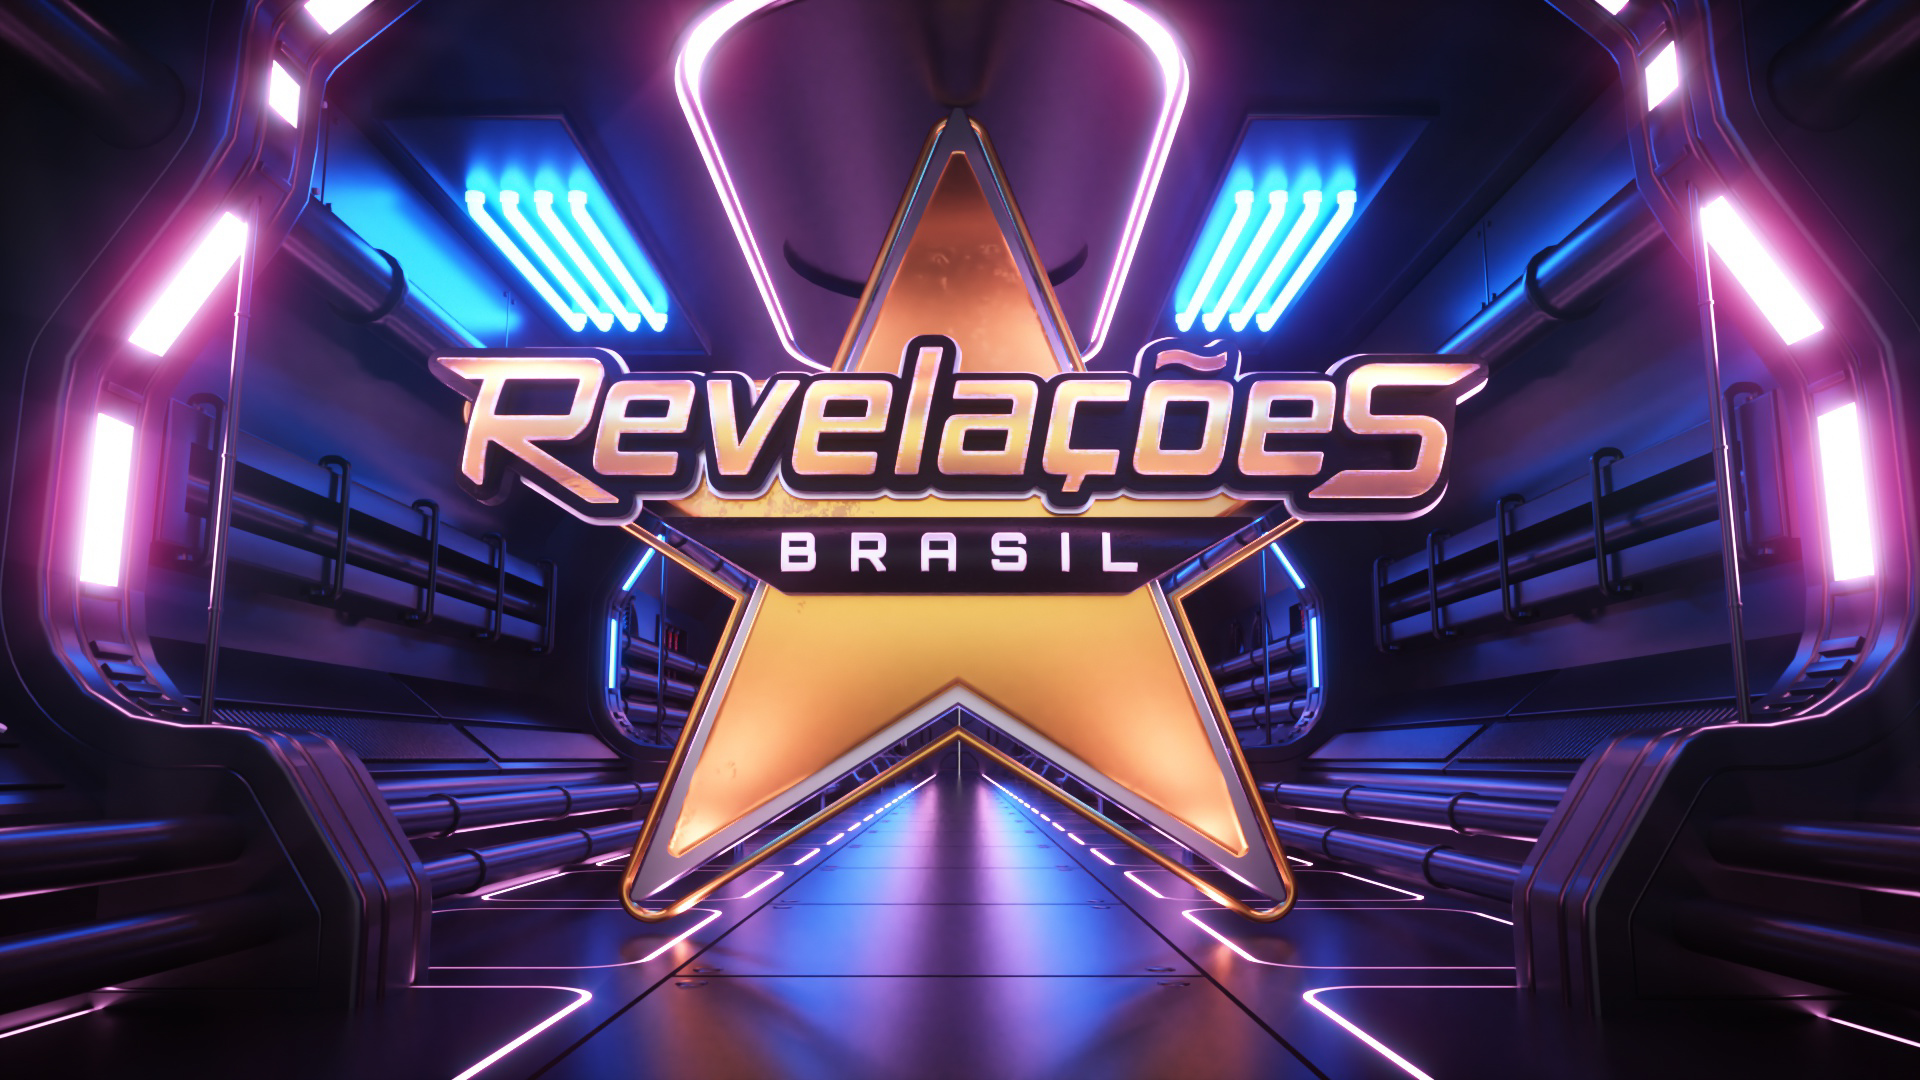 Frank Aguiar é o novo jurado do "Revelações Brasil" da TV Aparecida 42